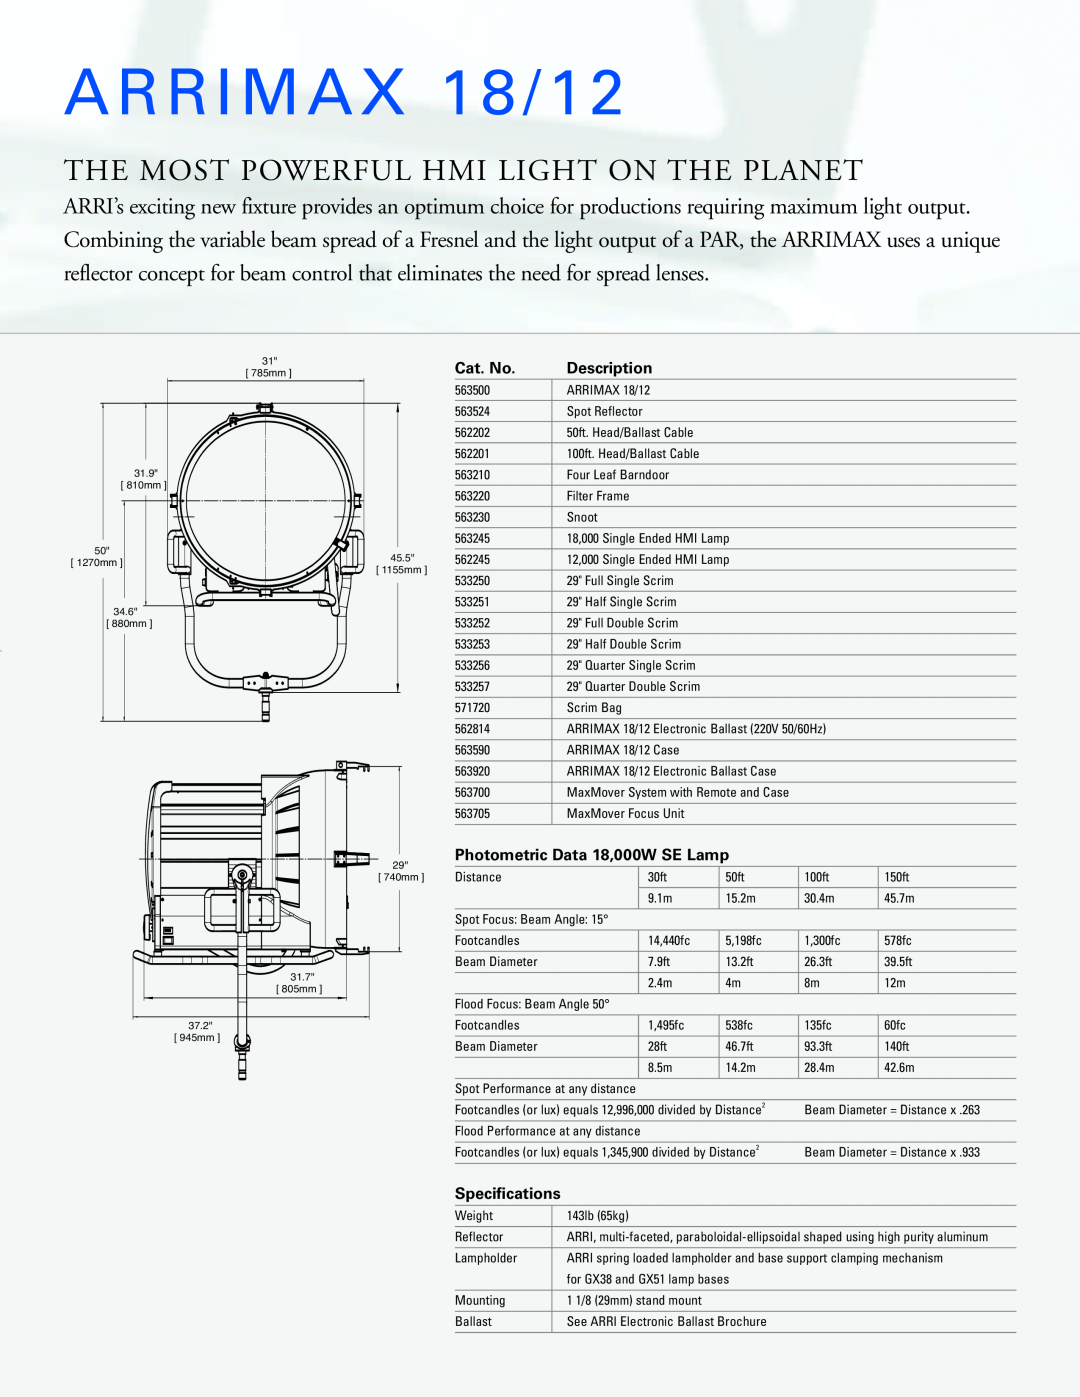 ARRI ARRIMAX 18/12, The Most Powerful Hmi Light On The Planet, Cat. No, Description, Photometric Data 18,000W SE Lamp 